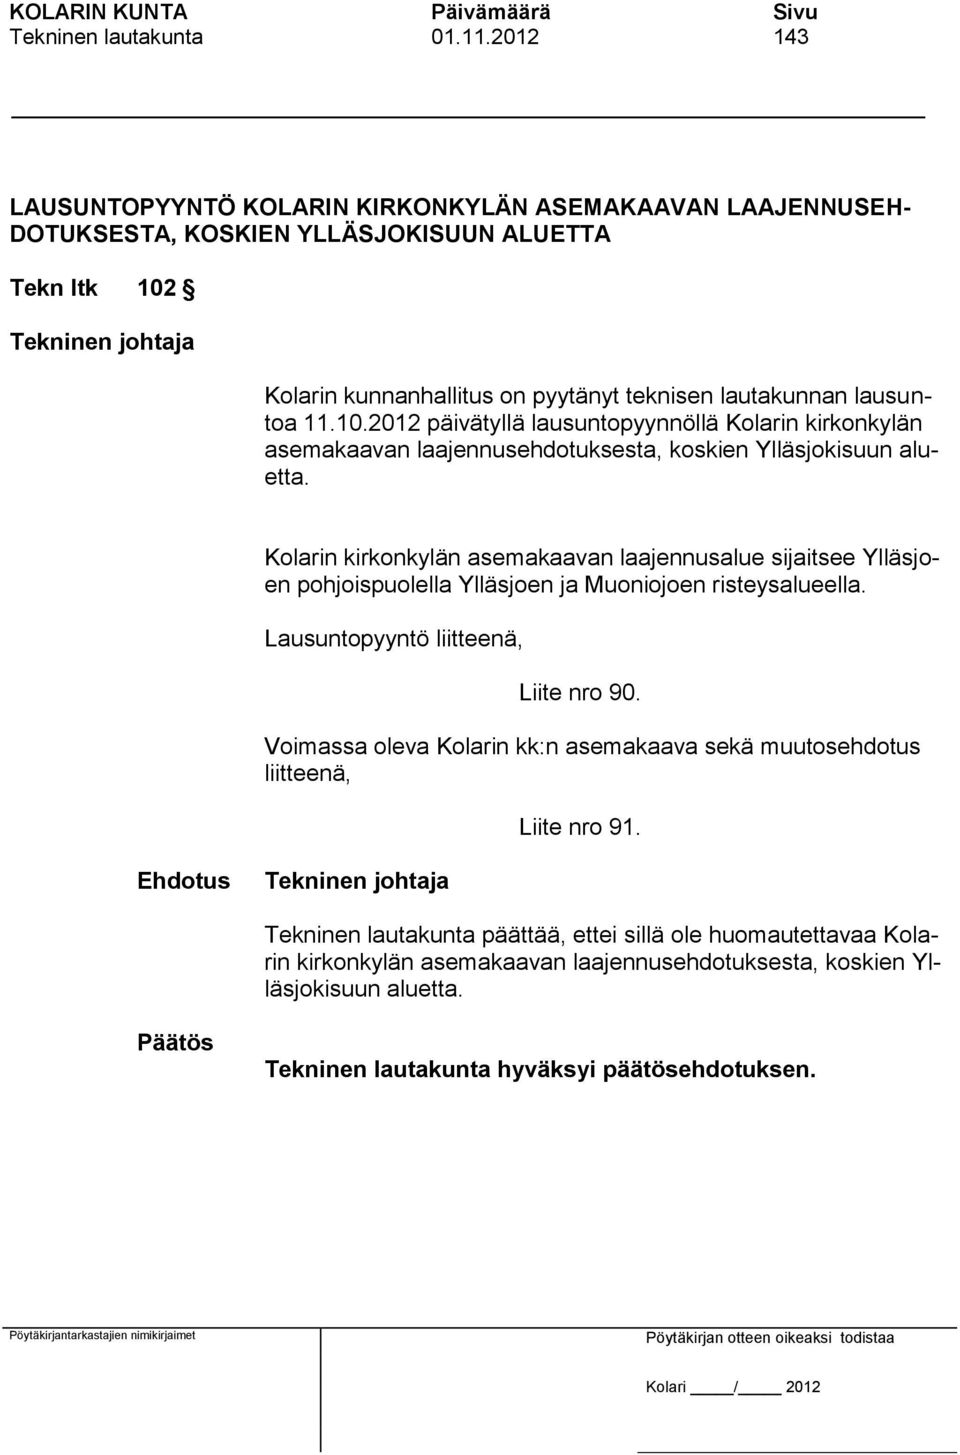 Kolarin kunnanhallitus on pyytänyt teknisen lautakunnan lausuntoa 11.10.2012 päivätyllä lausuntopyynnöllä Kolarin kirkonkylän asemakaavan laajennusehdotuksesta, koskien Ylläsjokisuun aluetta.